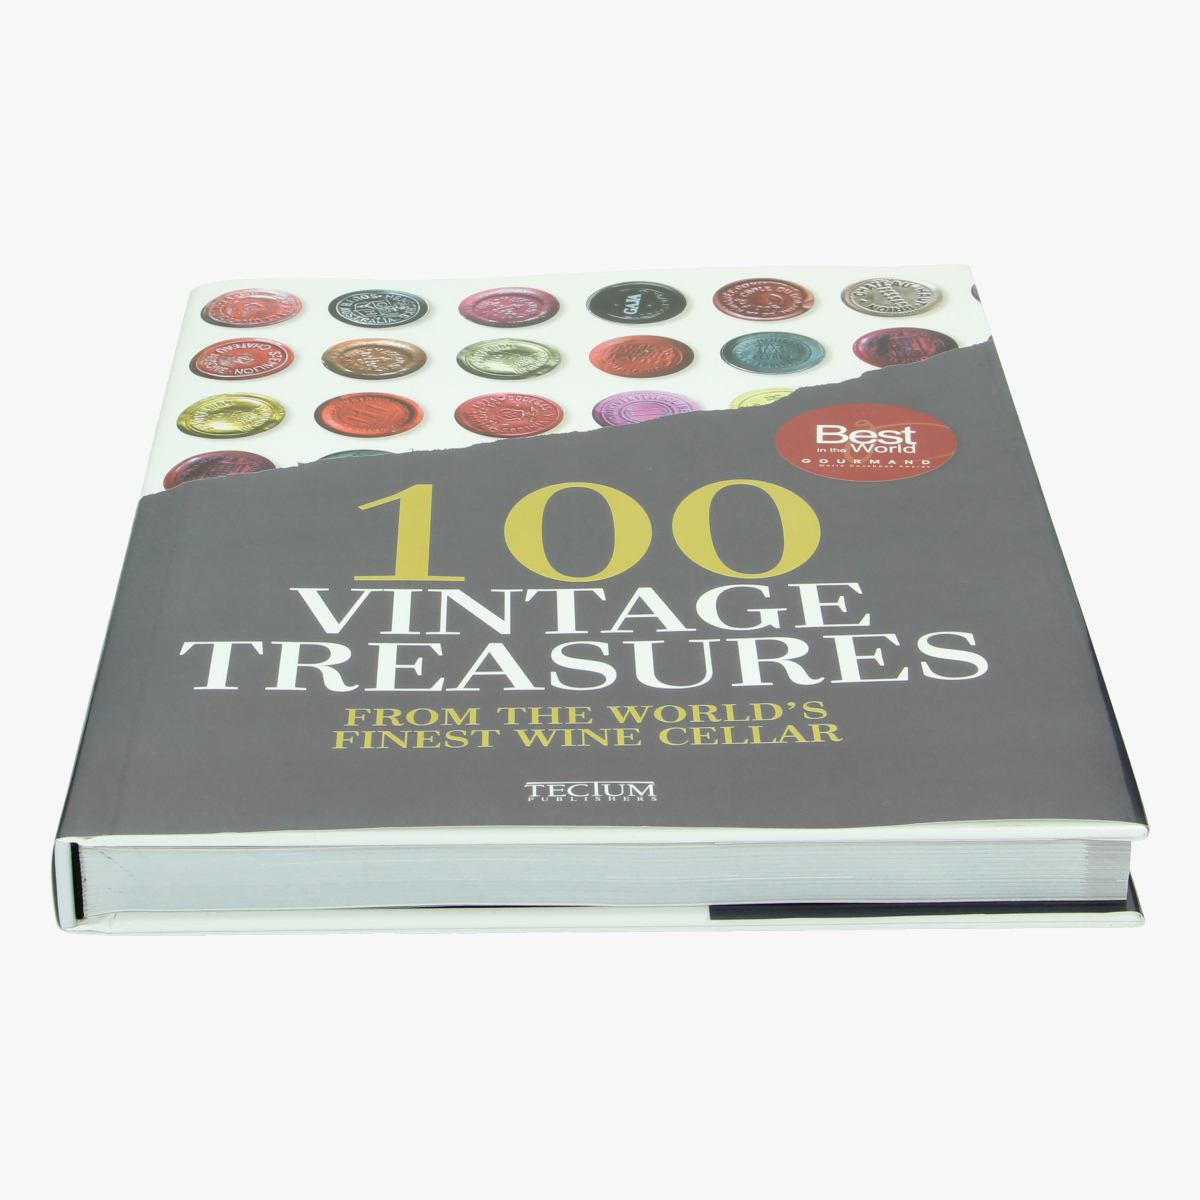 Afbeeldingen van 100 vintages treasures from the world's finest wine cellar. Boek